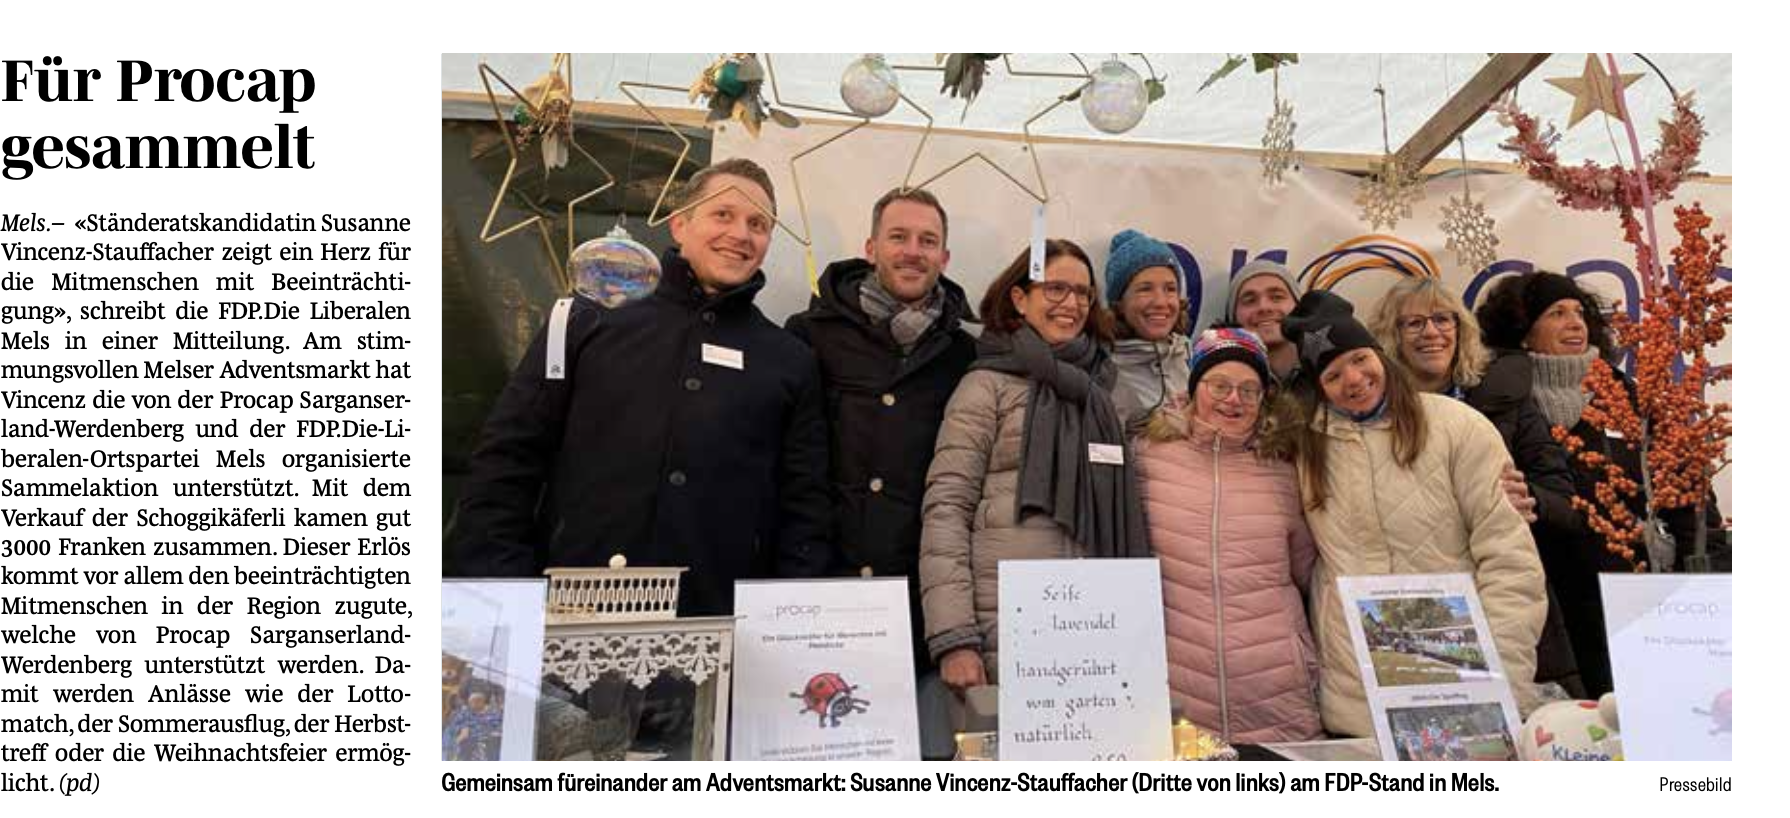 Susanne Vincenz-Staufacher sammelte mit der FDP Mels für die Procap Sarganserland-Werdenberg